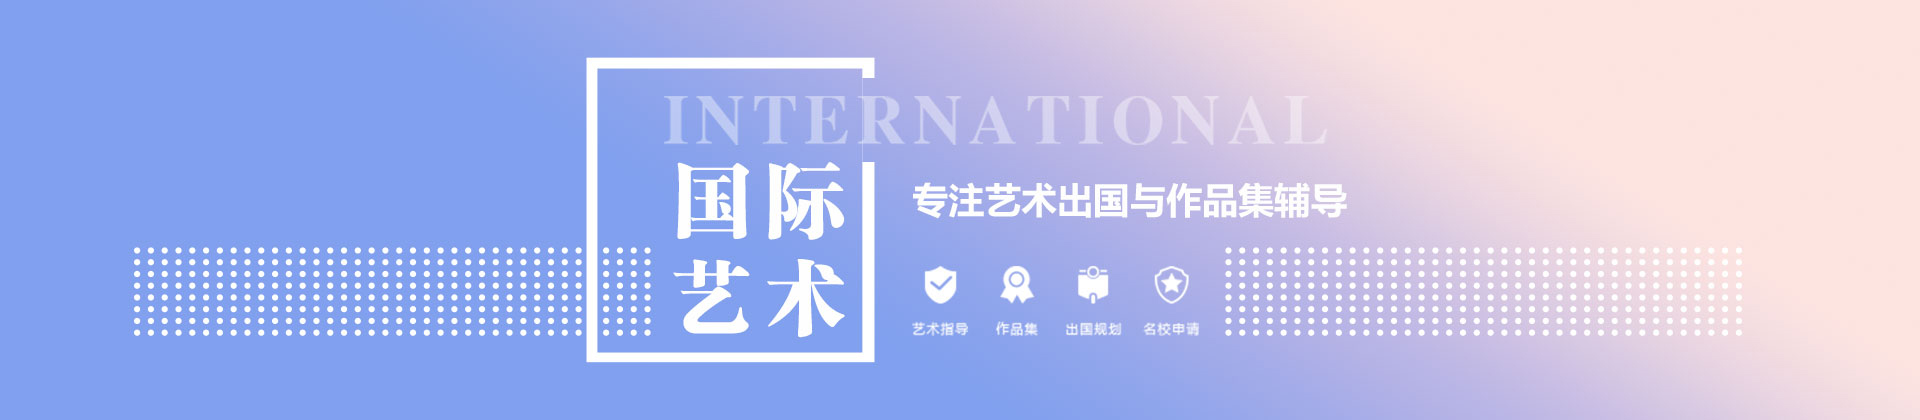 上海国际艺术教育